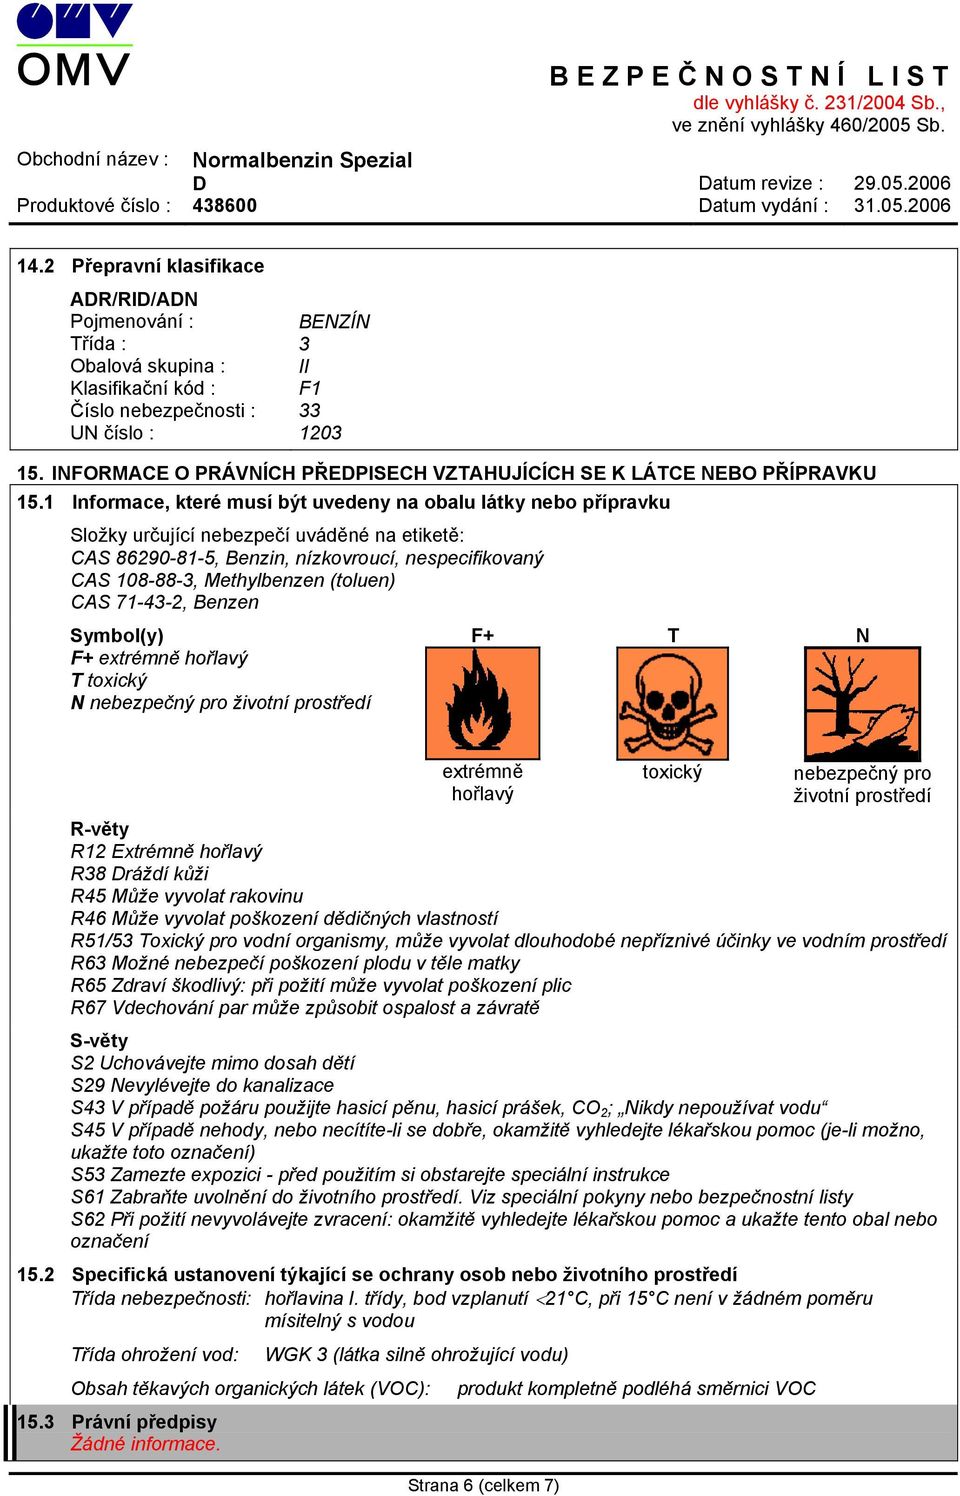 1 Informace, které musí být uvedeny na obalu látky nebo přípravku Složky určující nebezpečí uváděné na etiketě: CAS 86290-81-5, Benzin, nízkovroucí, nespecifikovaný CAS 108-88-3, Methylbenzen